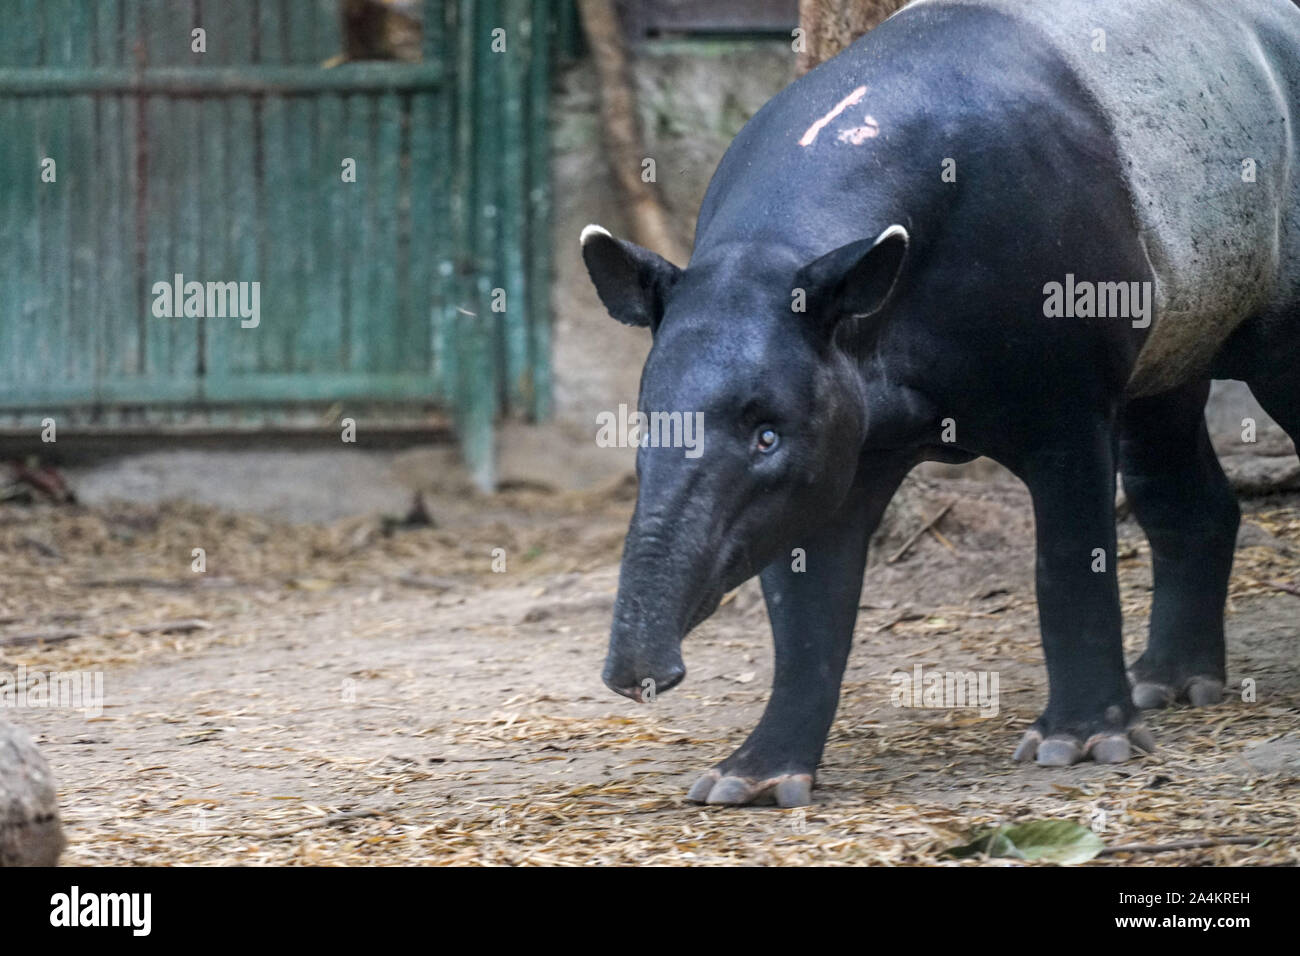 Ein Tapir ist auf der Suche nach Essen. Tapir ist eine einzigartige Tier aus Asien, die häufig in Indonesien gefunden. Tapir hat einen kurzen Rüssel und schwarze und weiße Haut Stockfoto